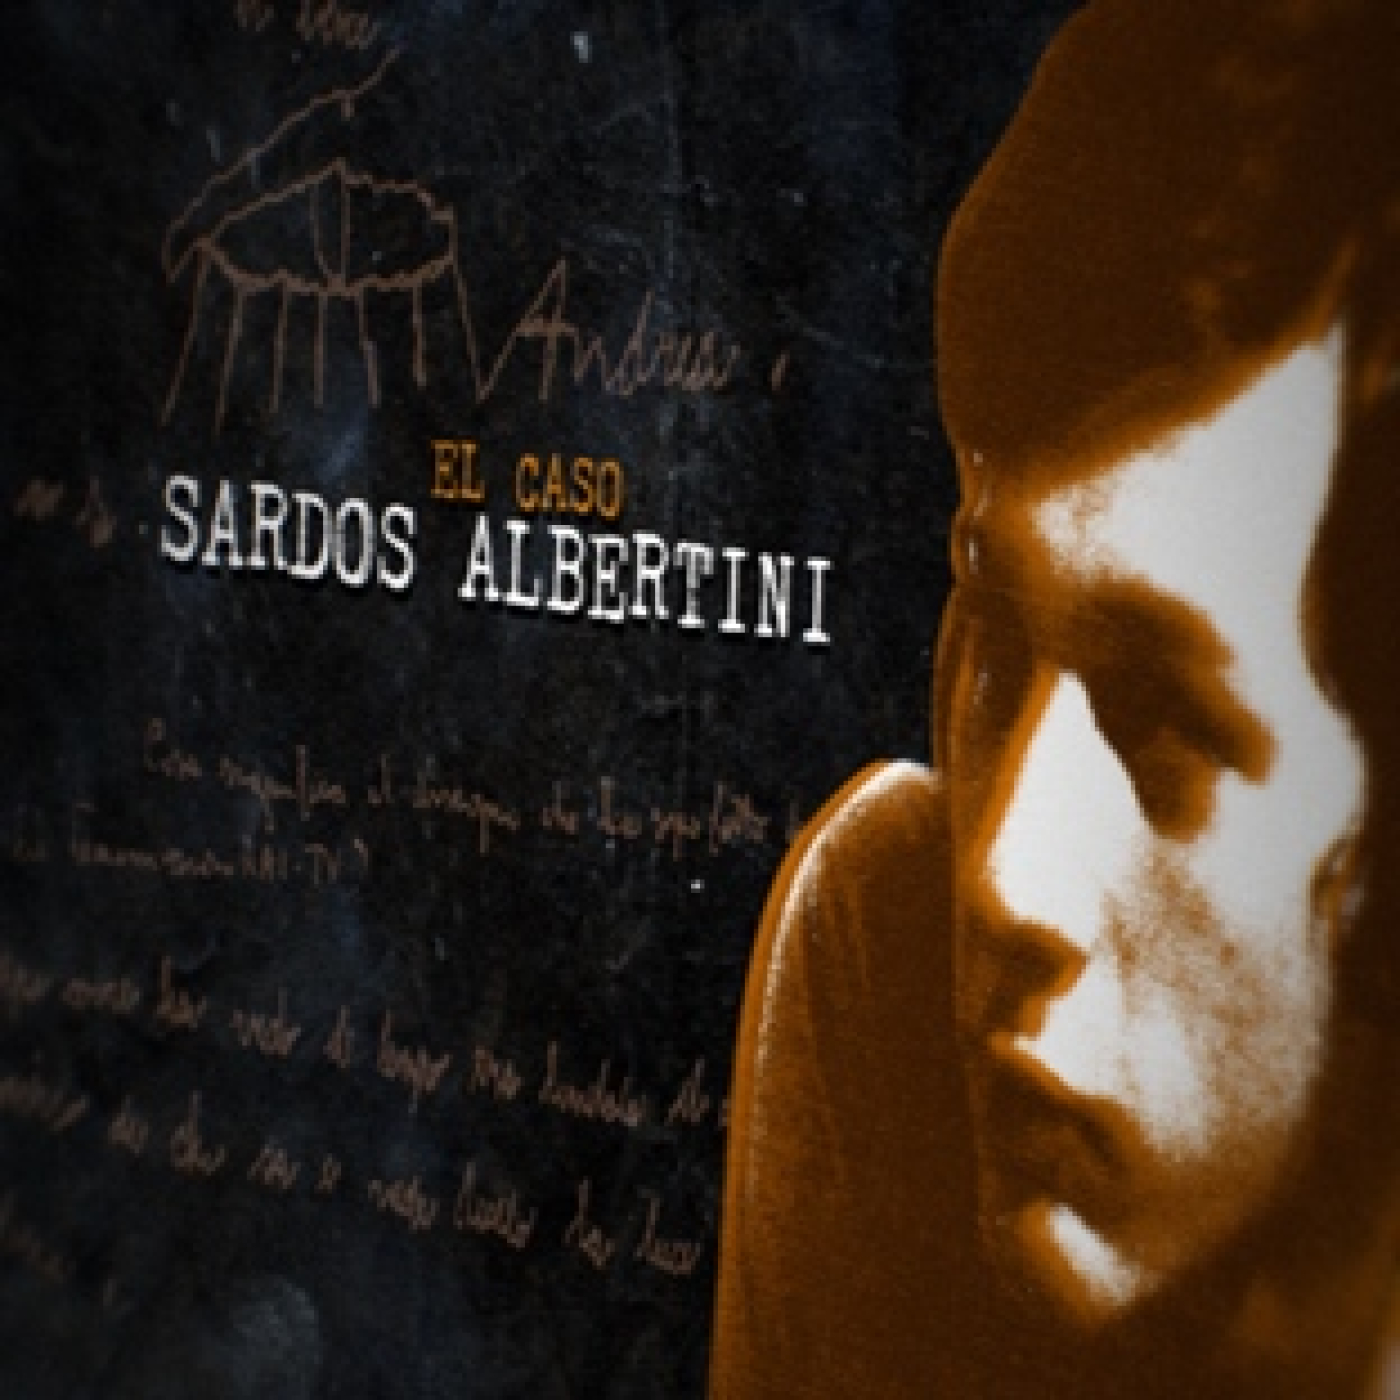 Cuarto Milenio: El caso Sardos Albertini